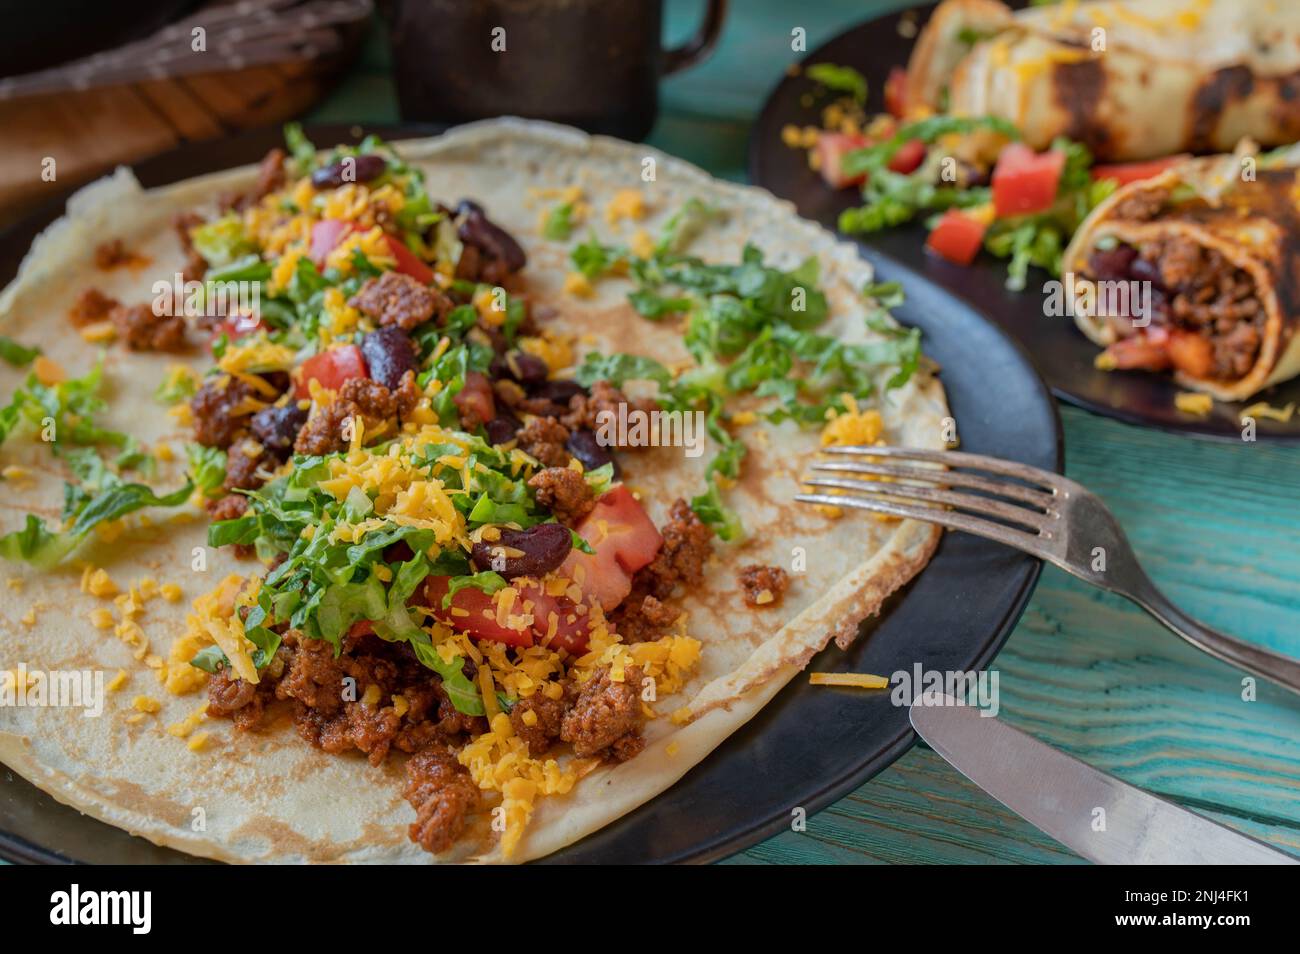 Offener Burrito mit Rinderhack, Kidney Beans, Cheddar Cheese, Tomaten und Salat auf einem Teller Stockfoto